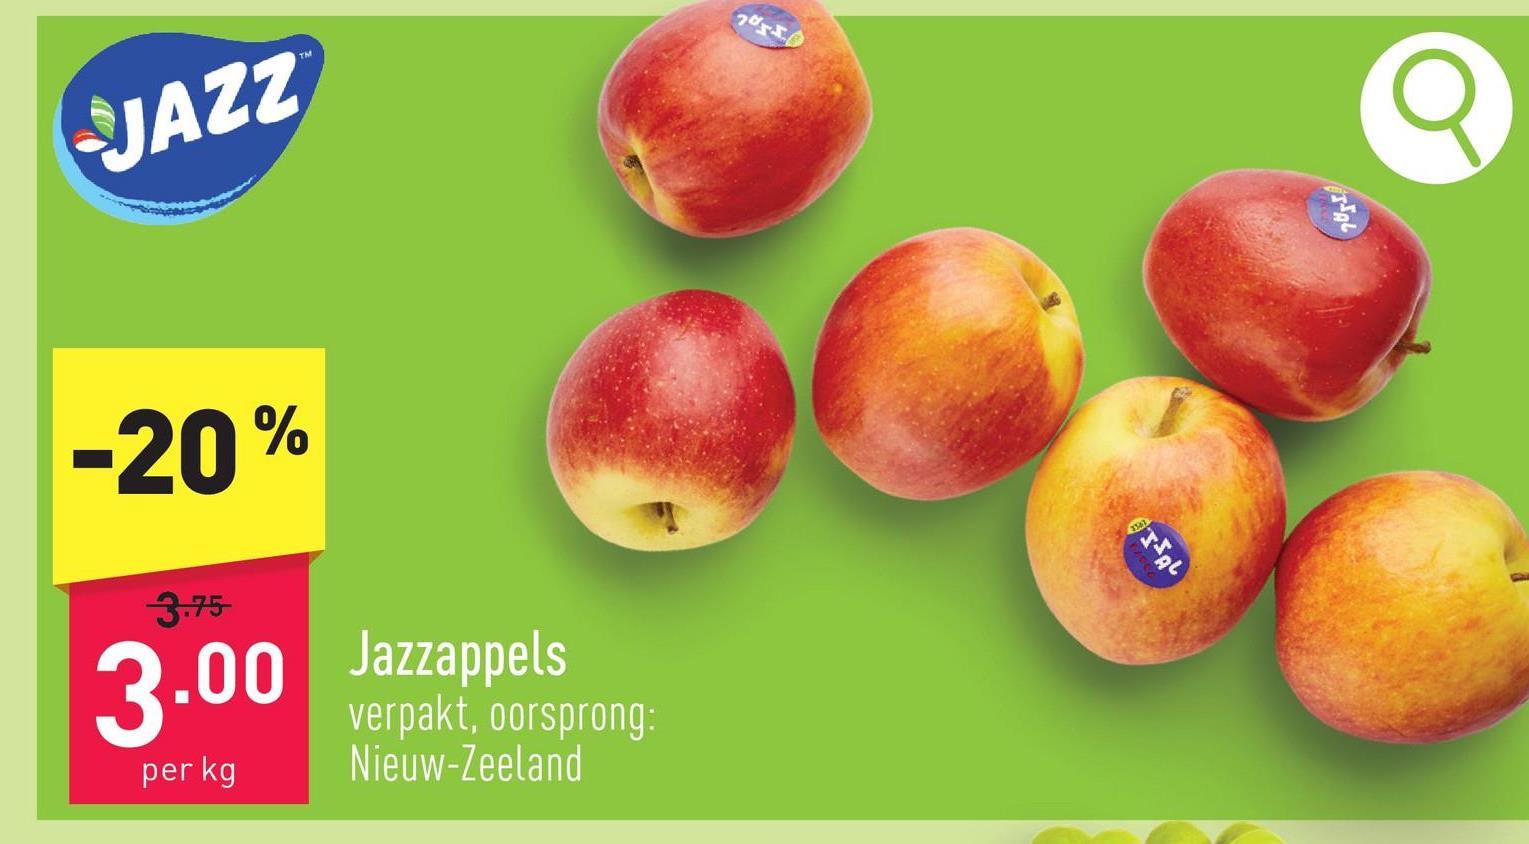 Jazzappels verpakt, oorsprong: Nieuw-Zeeland